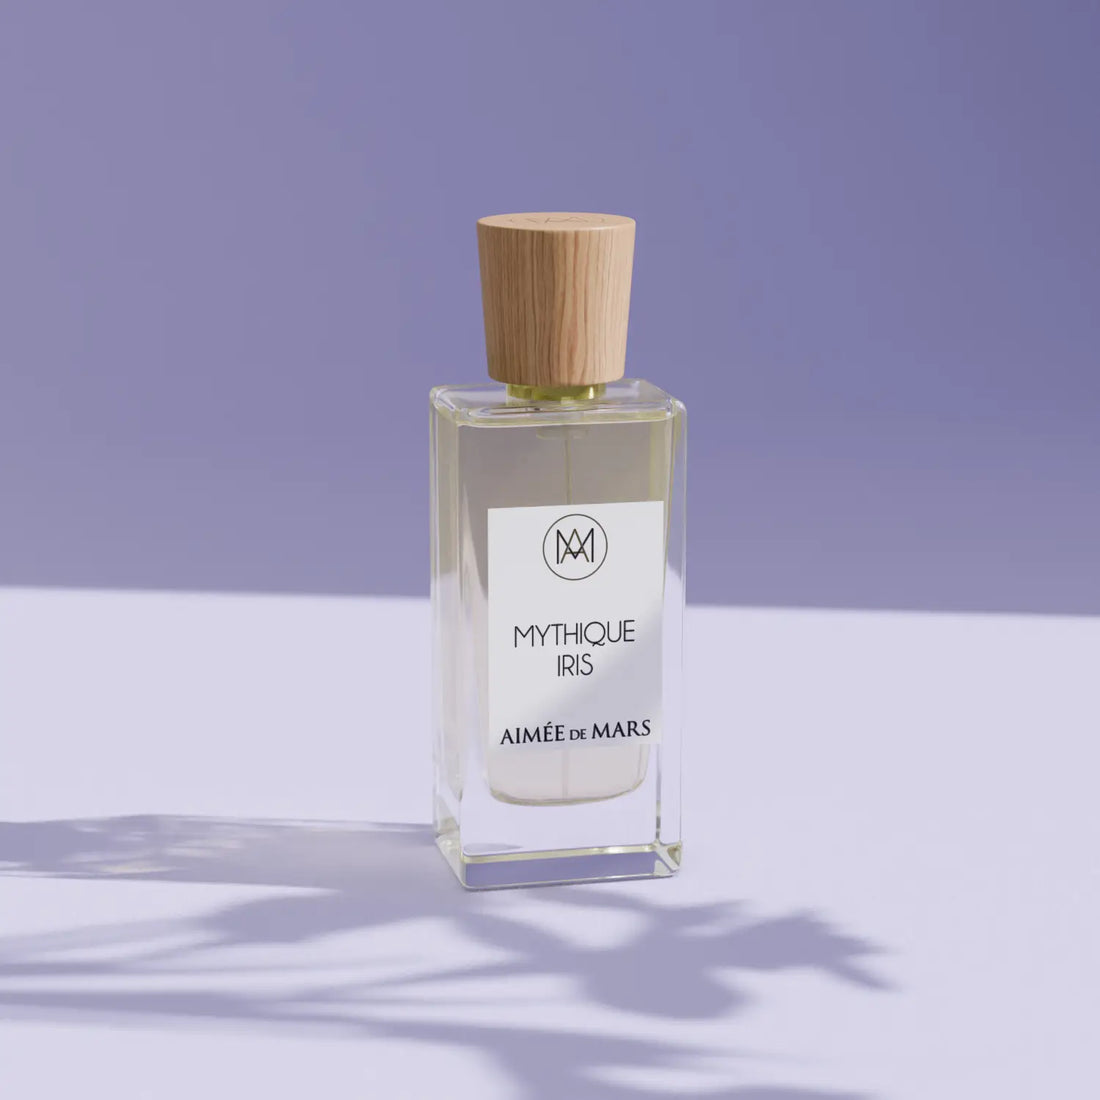 Mythique Iris eau de parfum